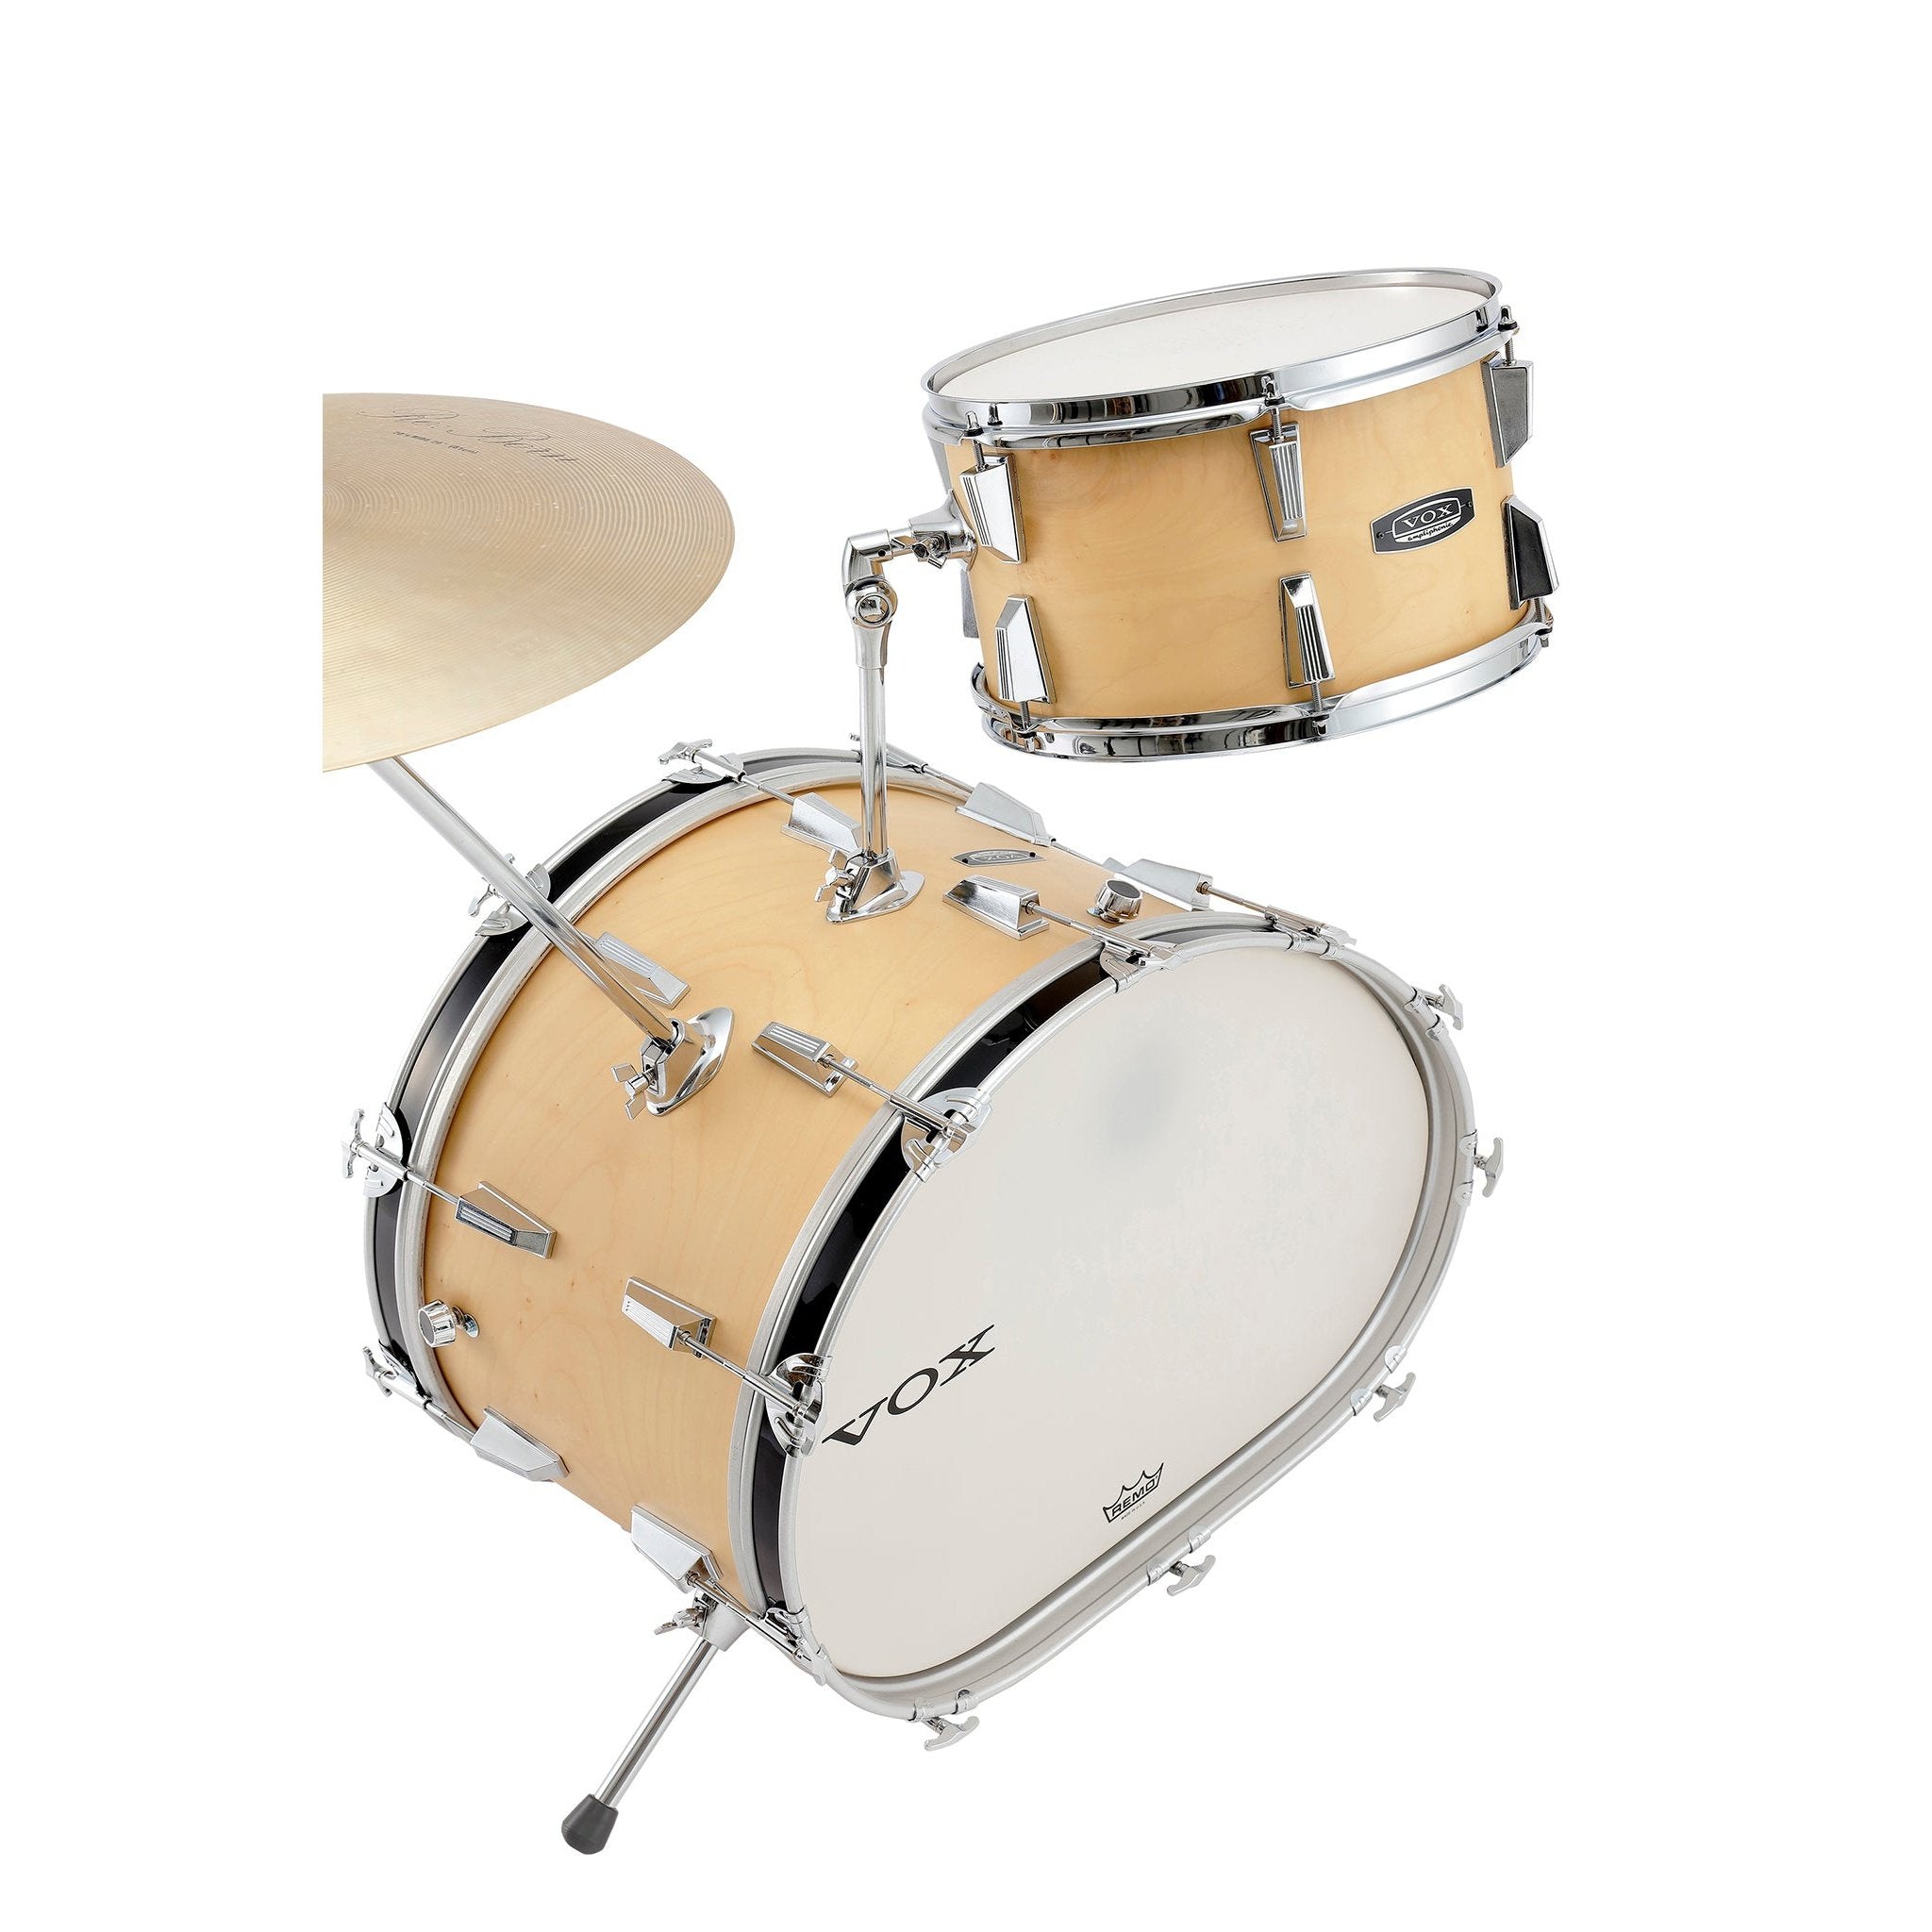 Vox Telstar Maple Drum Kit 12